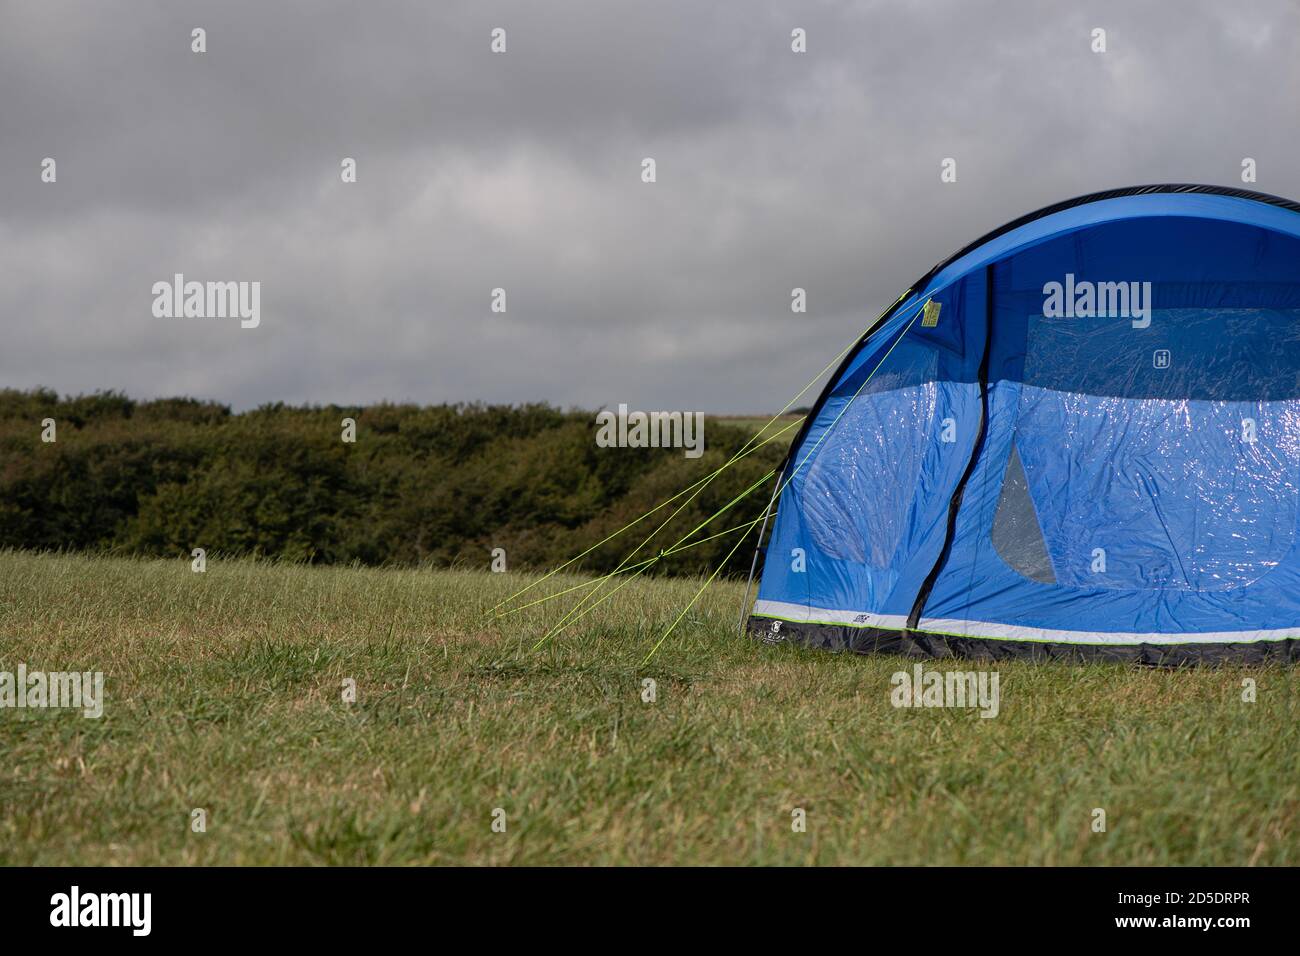 Ein einziges modernes blaues Zelt mit verschiedenen Kulturen und Winkeln In einem Feld mit Kopieplatz, um im Camping zu verwenden Geschichten Stockfoto